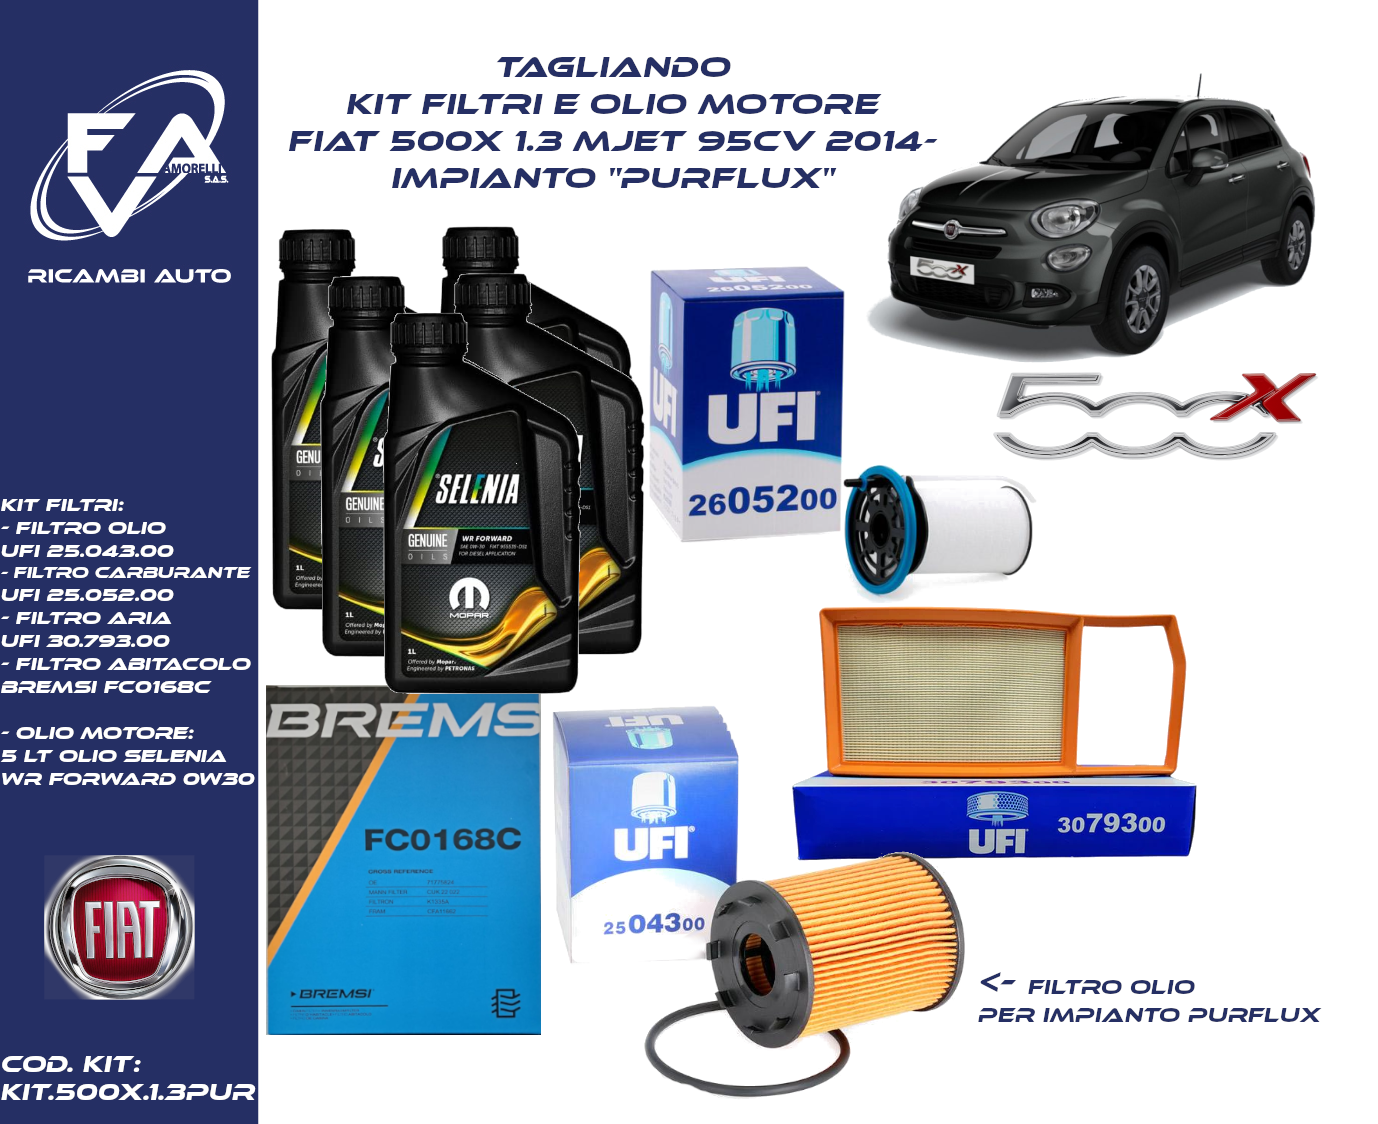 Tagliando kit filtri e Olio motore Fiat 500x 1.3 Mjet 95CV 2014